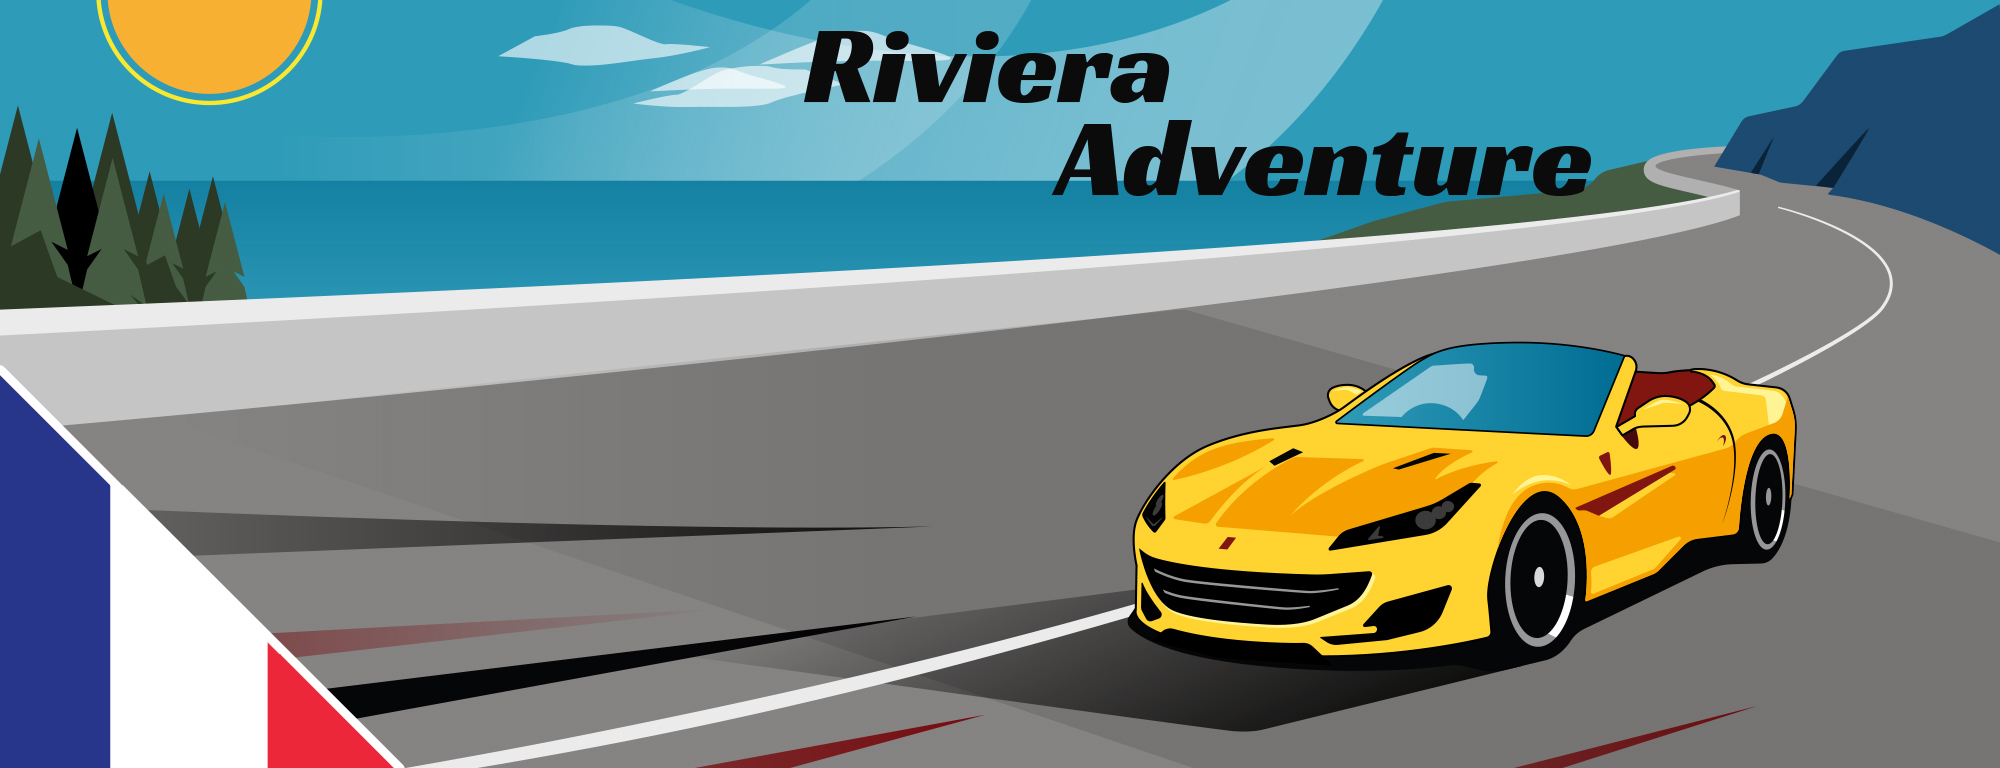 Riviera Adventure Road tour